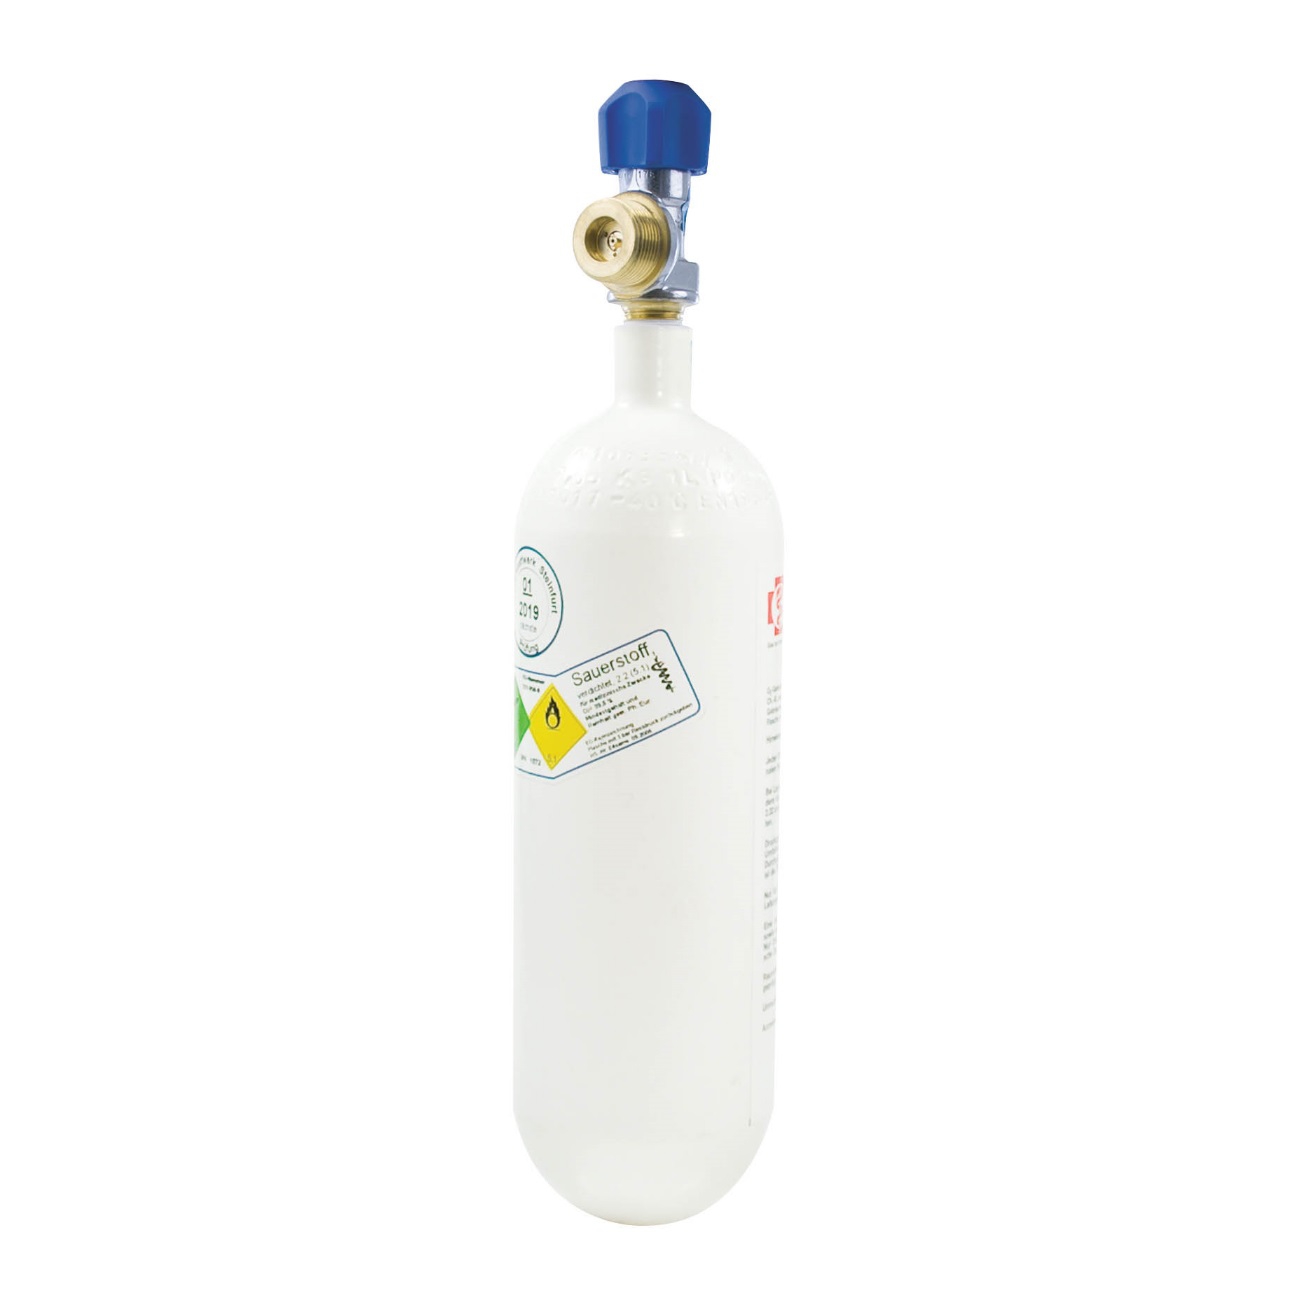 1 Liter Sauerstoffflasche, Leichtstahl, 200 bar med. O2 - dein